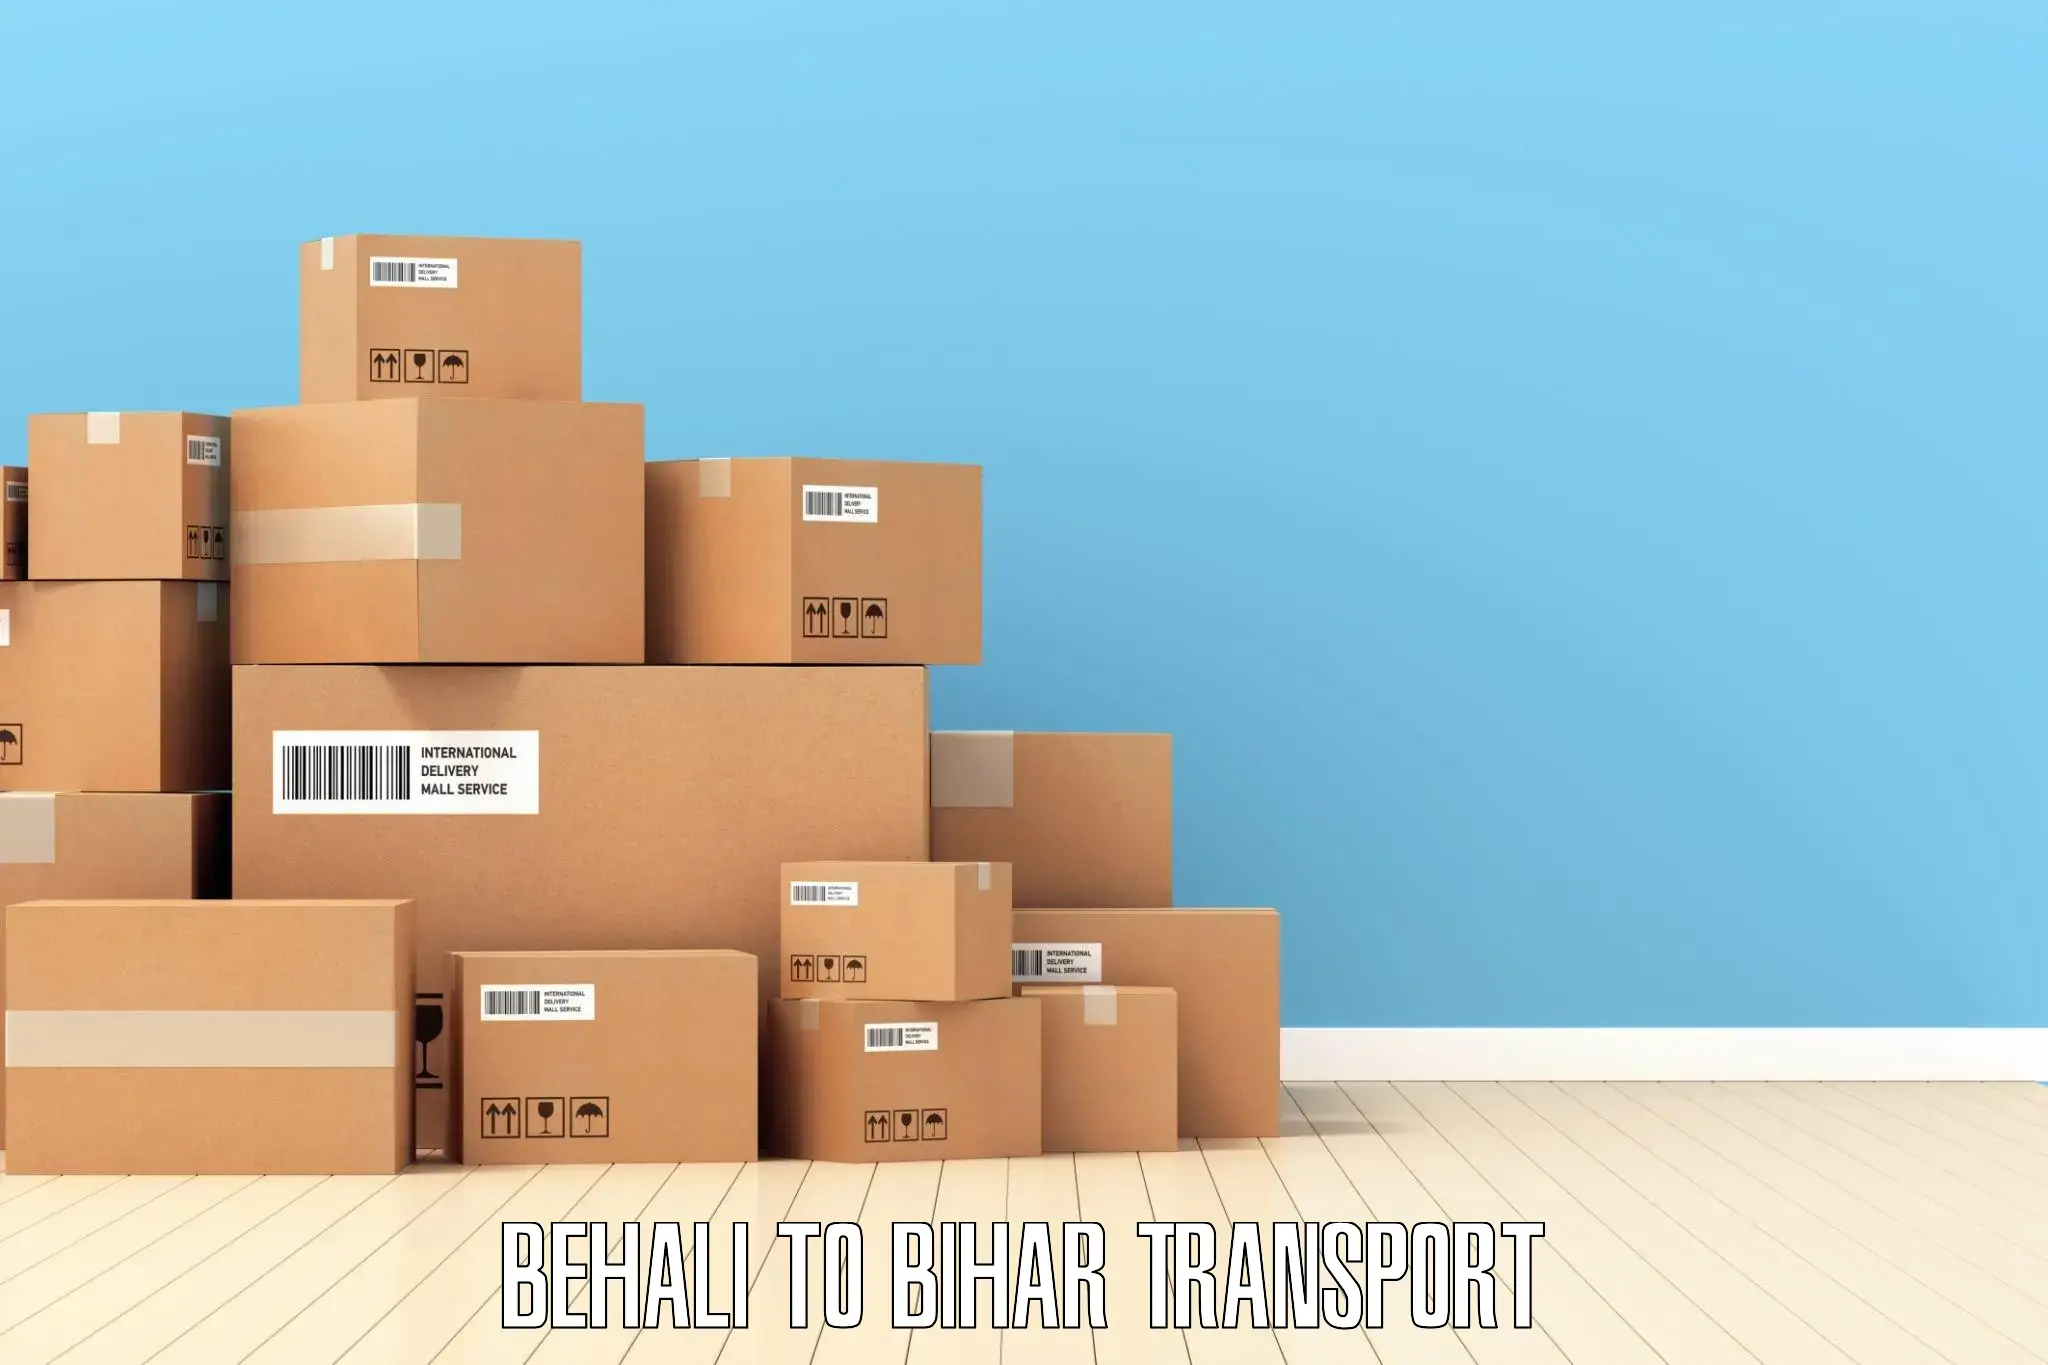 Cargo transportation services Behali to Katoria